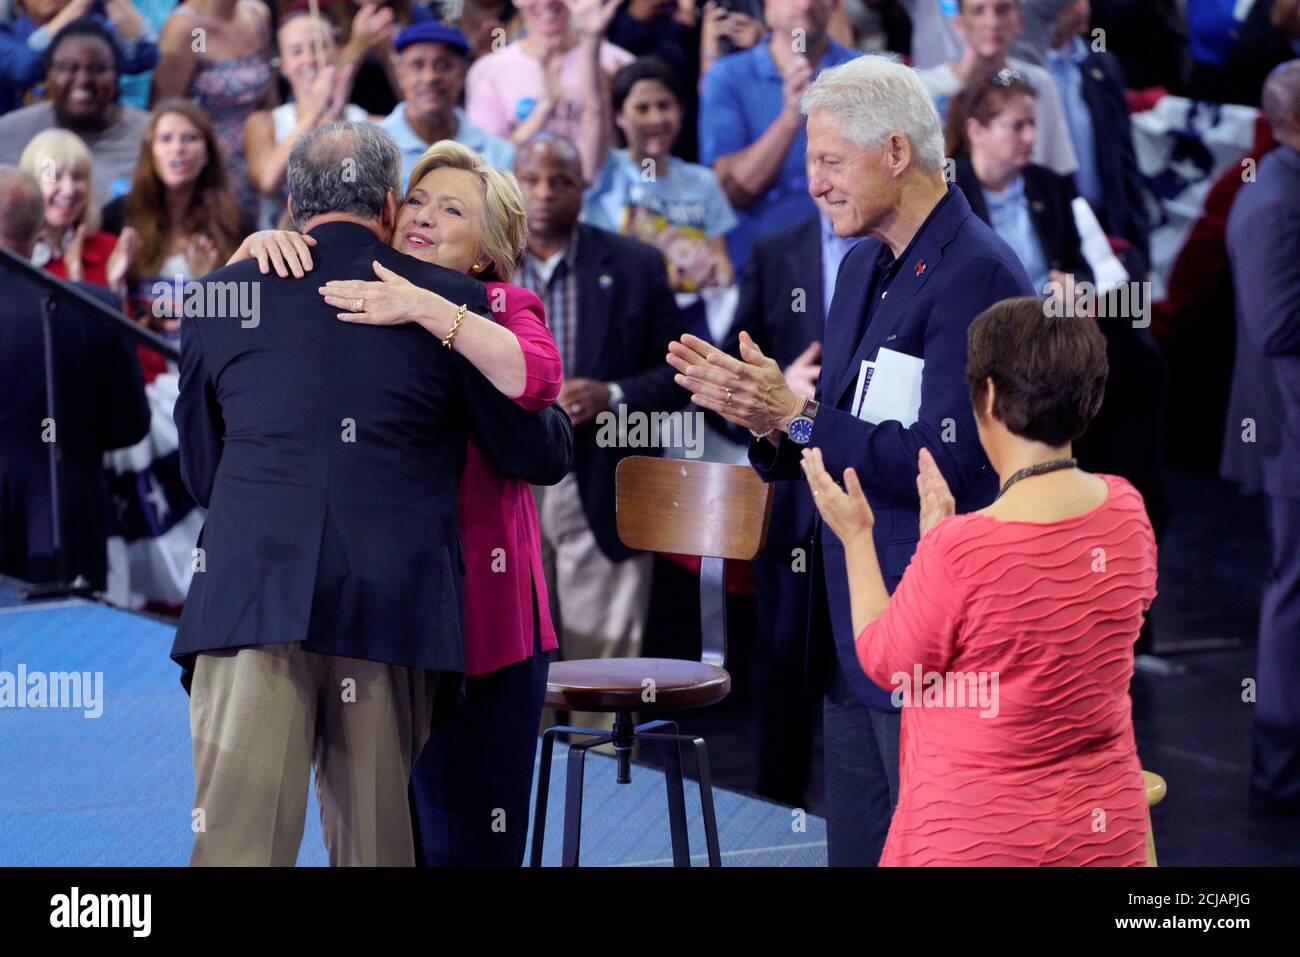 La candidata presidencial demócrata Hillary Clinton con su esposo Bill (2do R) abraza a su compañera de carrera Time Kaine (L) en un mitin de campaña después de la Convención Nacional Democrática en Filadelfia el 29 de julio de 2016. A la derecha está la esposa de Kaine, Anne Holton. REUTERS/Rick Wilking Foto de stock